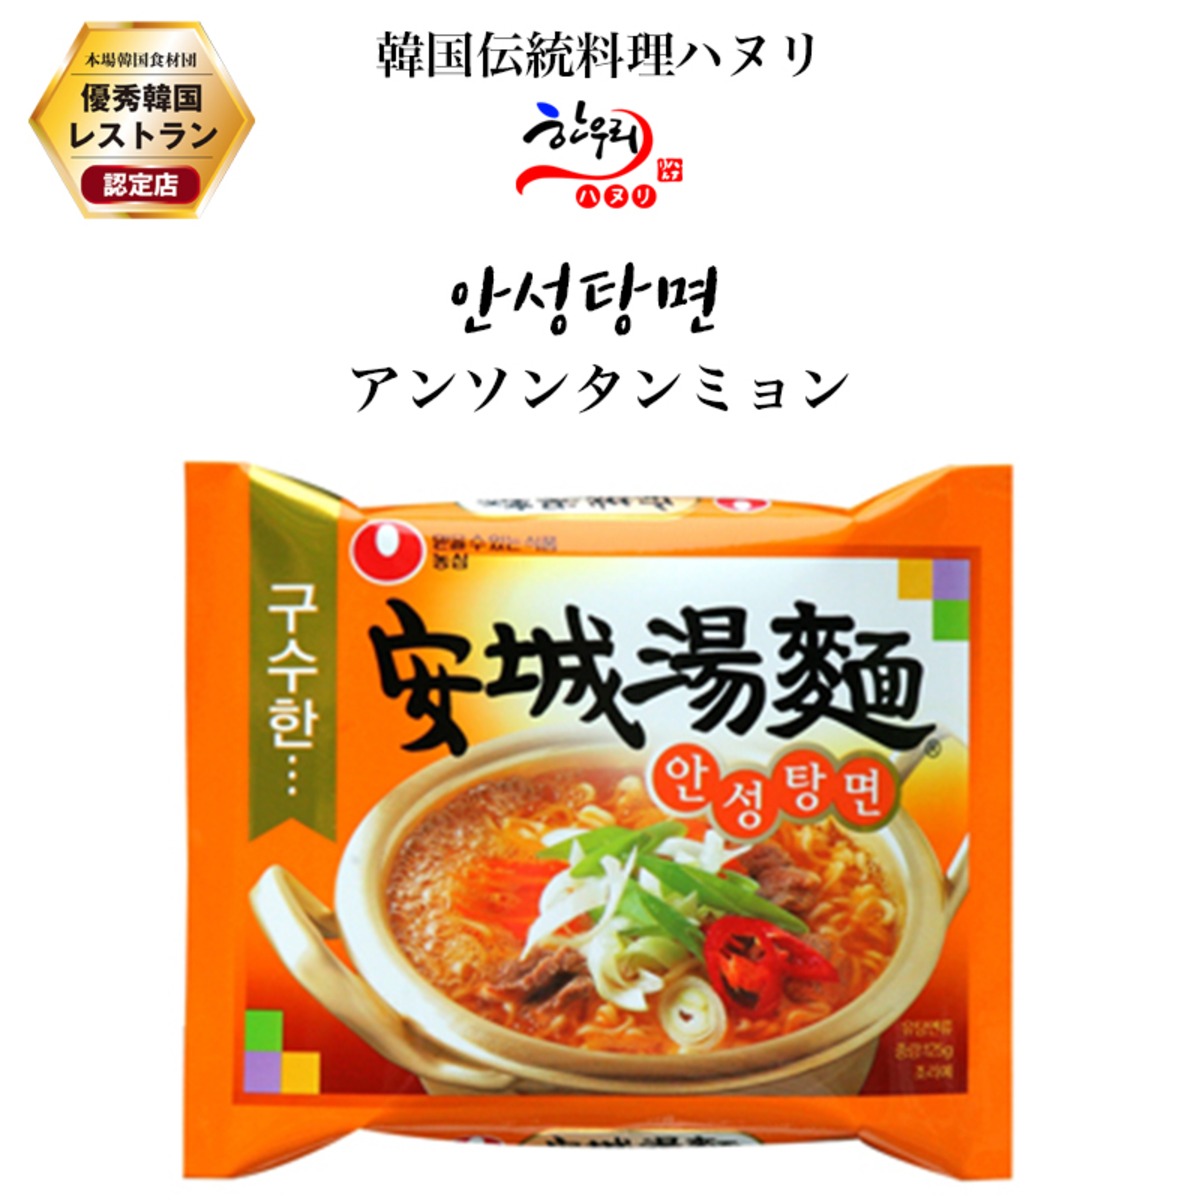 アンソンタンミョン 韓国政府の 優秀韓食レストラン 認定店の韓国伝統料理 ハヌリ